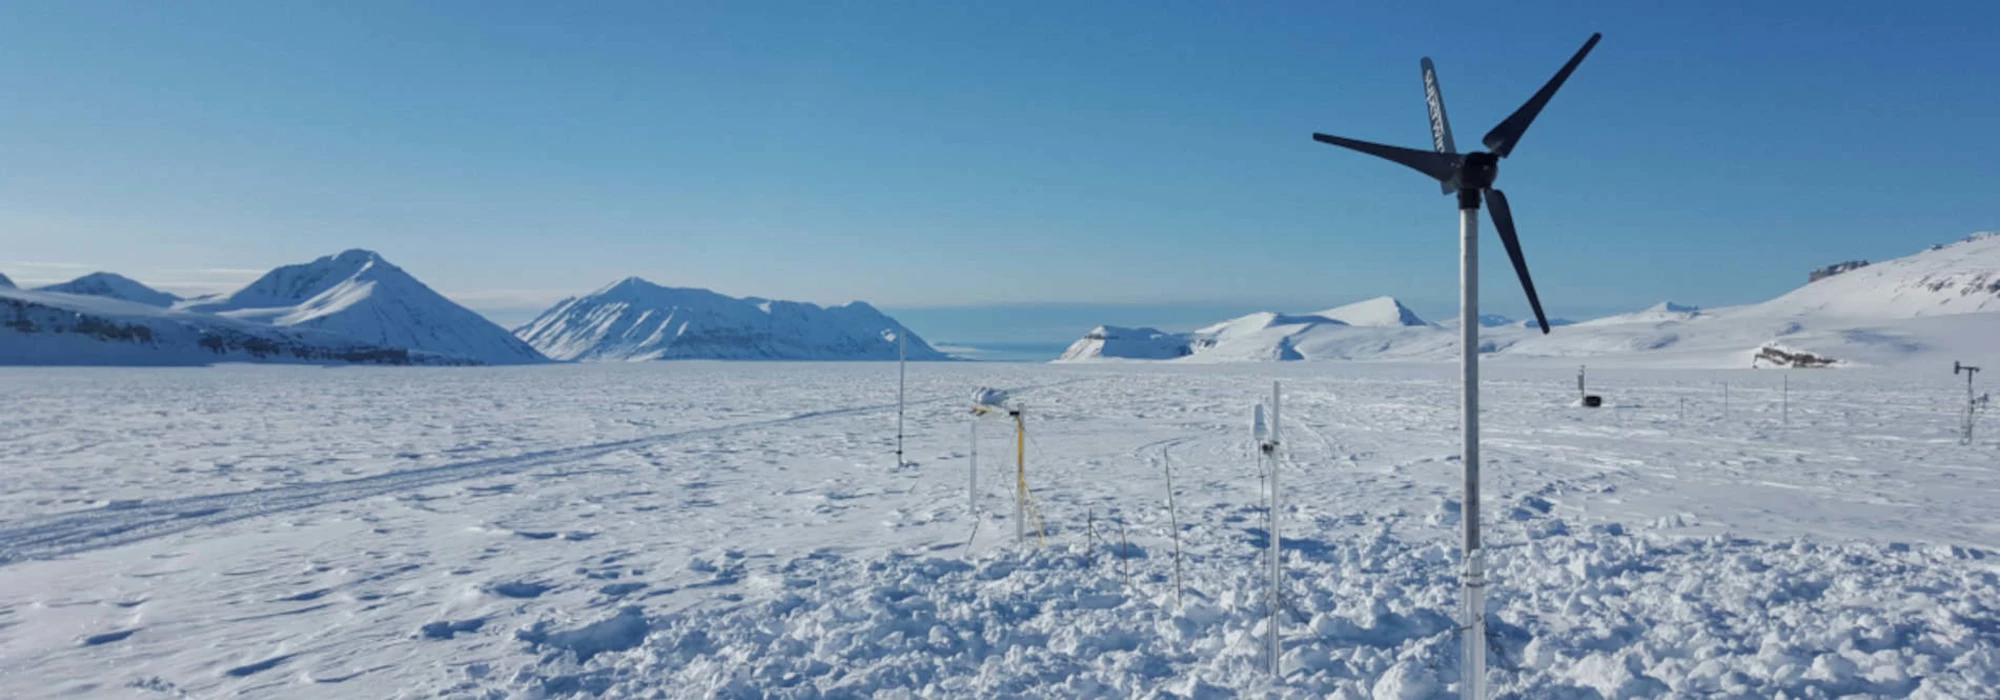 Arktische Winterlandschaft mit Windenergieanlage SW 353 im Vordergrund